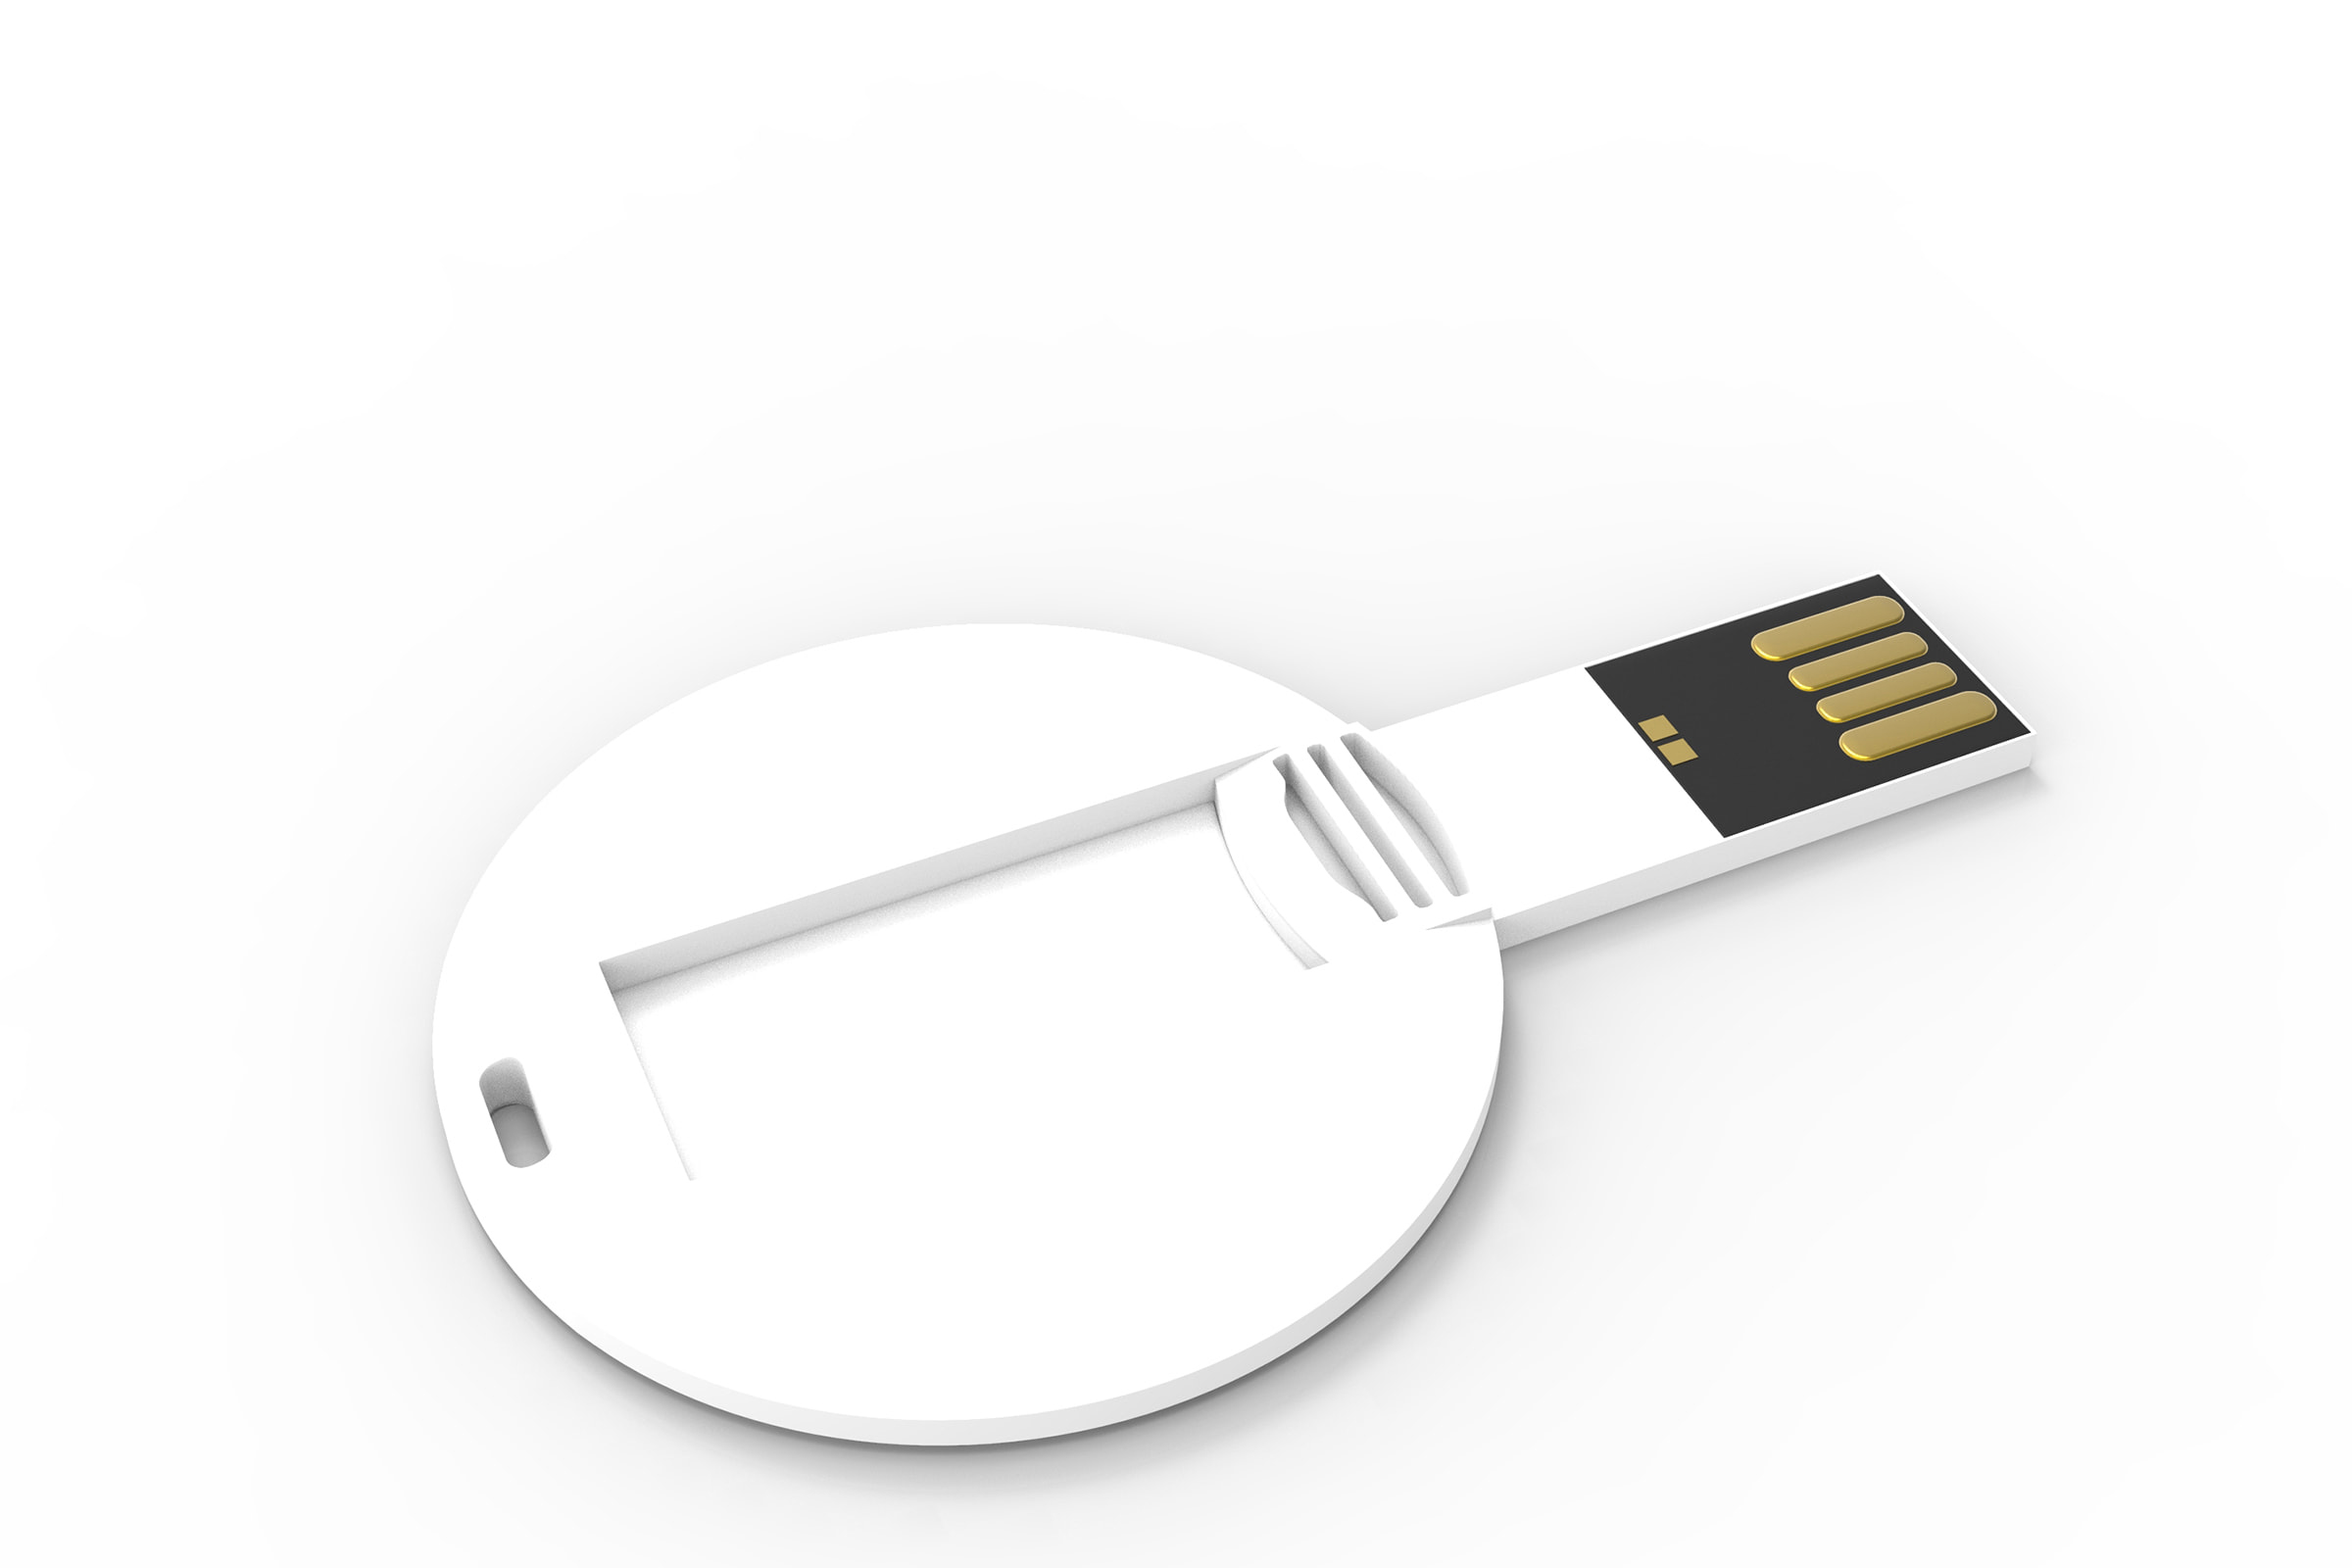 USB coincard